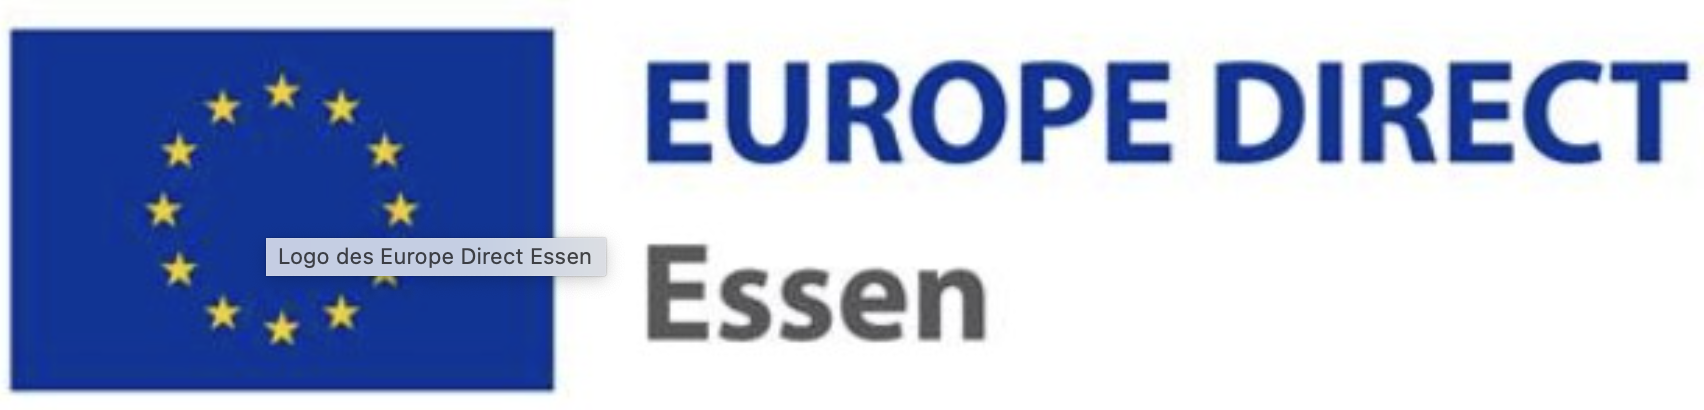 Europe Direct Essen